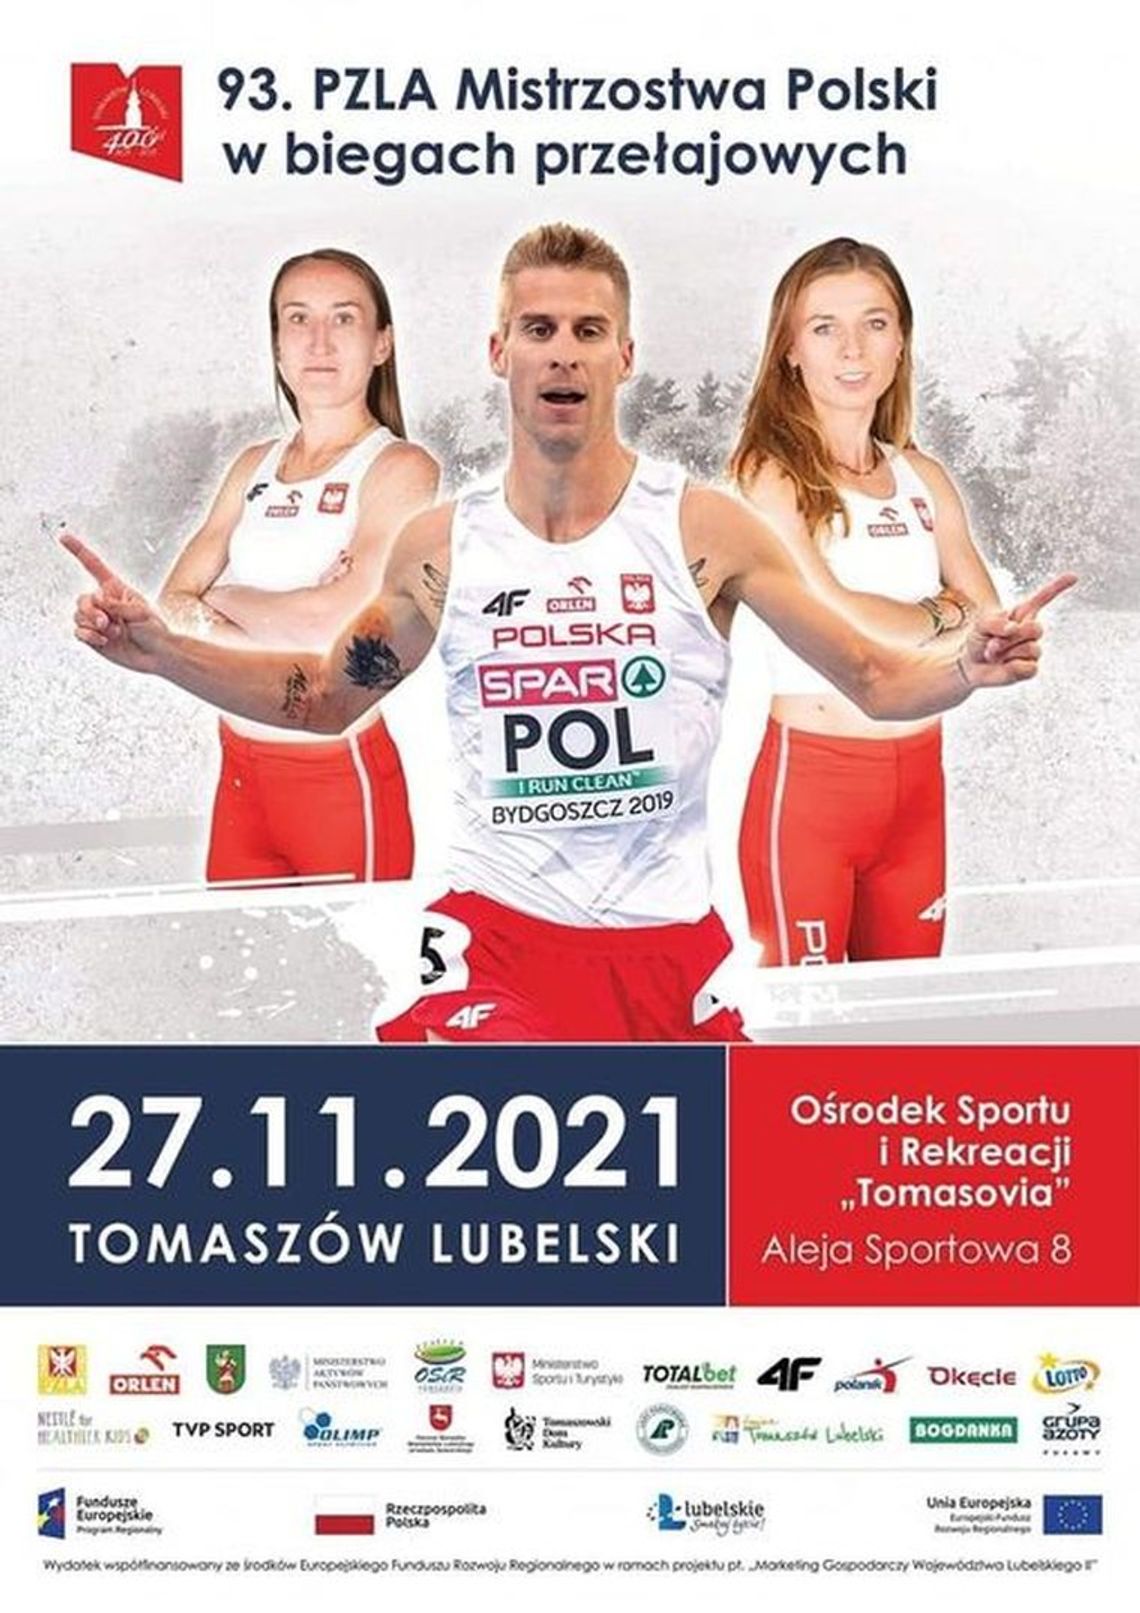 Mistrzostwa Polski i Mistrzostwa Polski Masters w Biegach Przełajowych